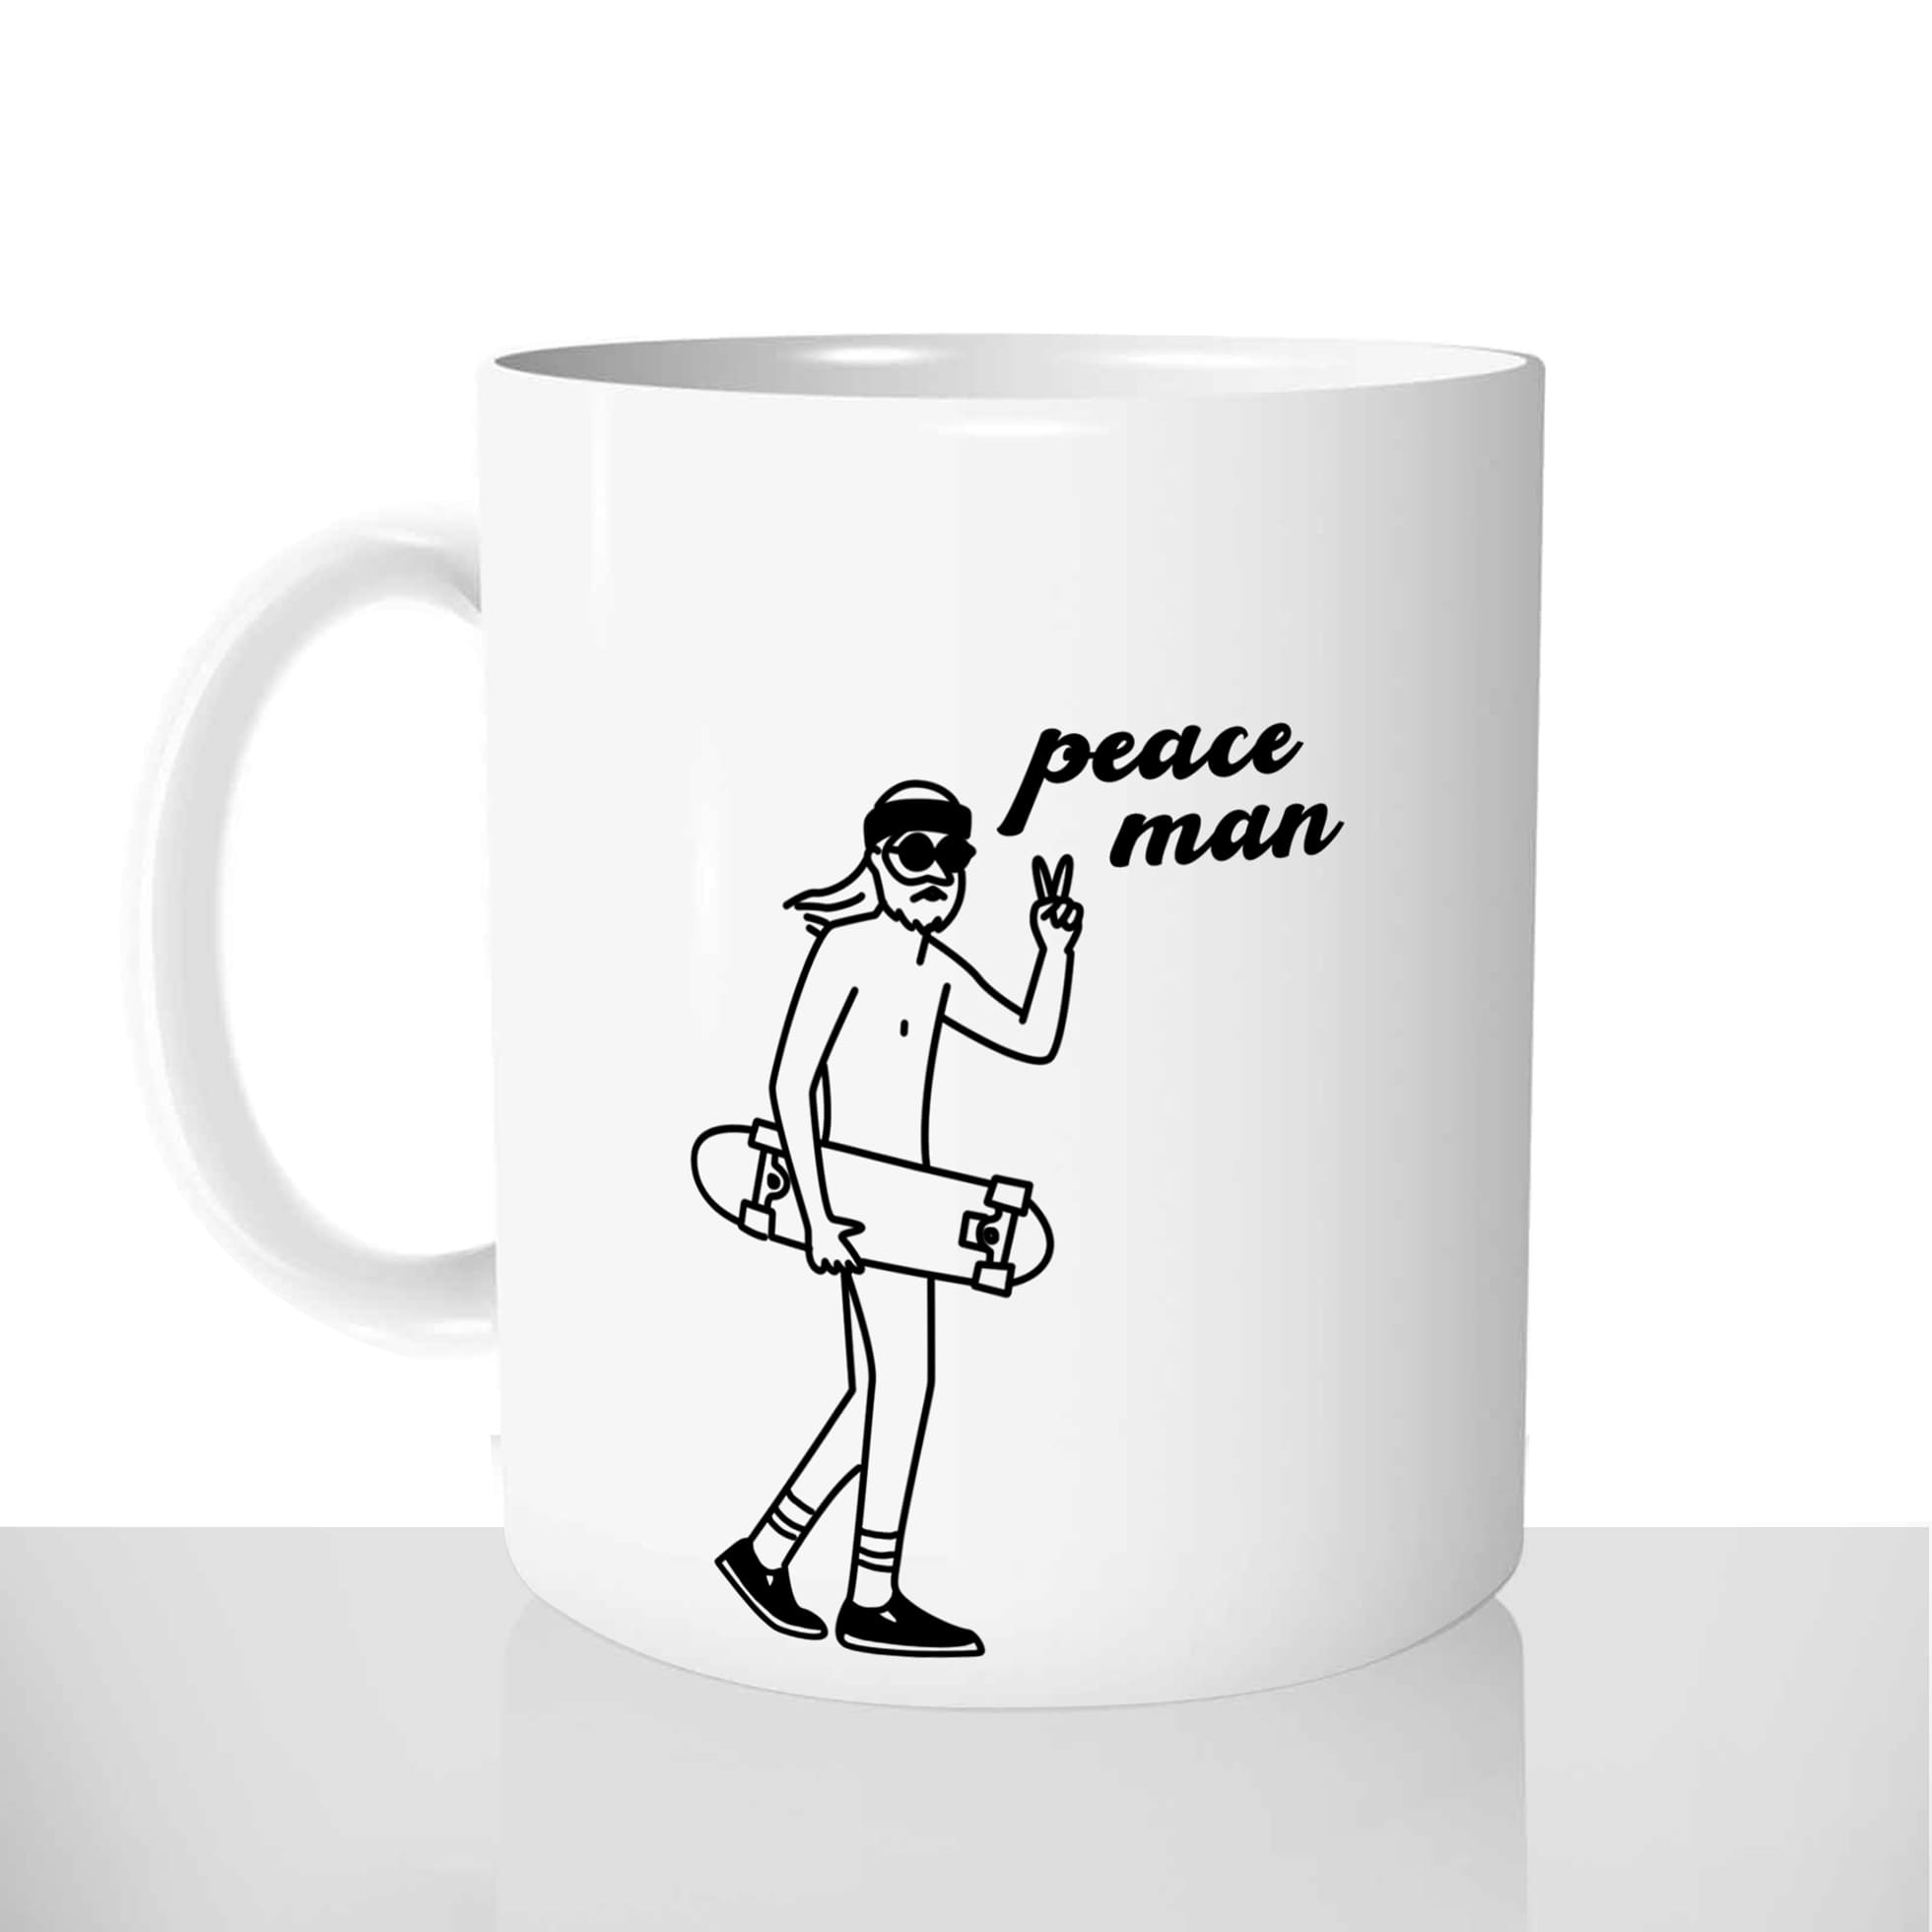 mug classique en céramique 11oz personnalisé personnalisation photo skateur peace man cool prenom sport personnalisable cadeau